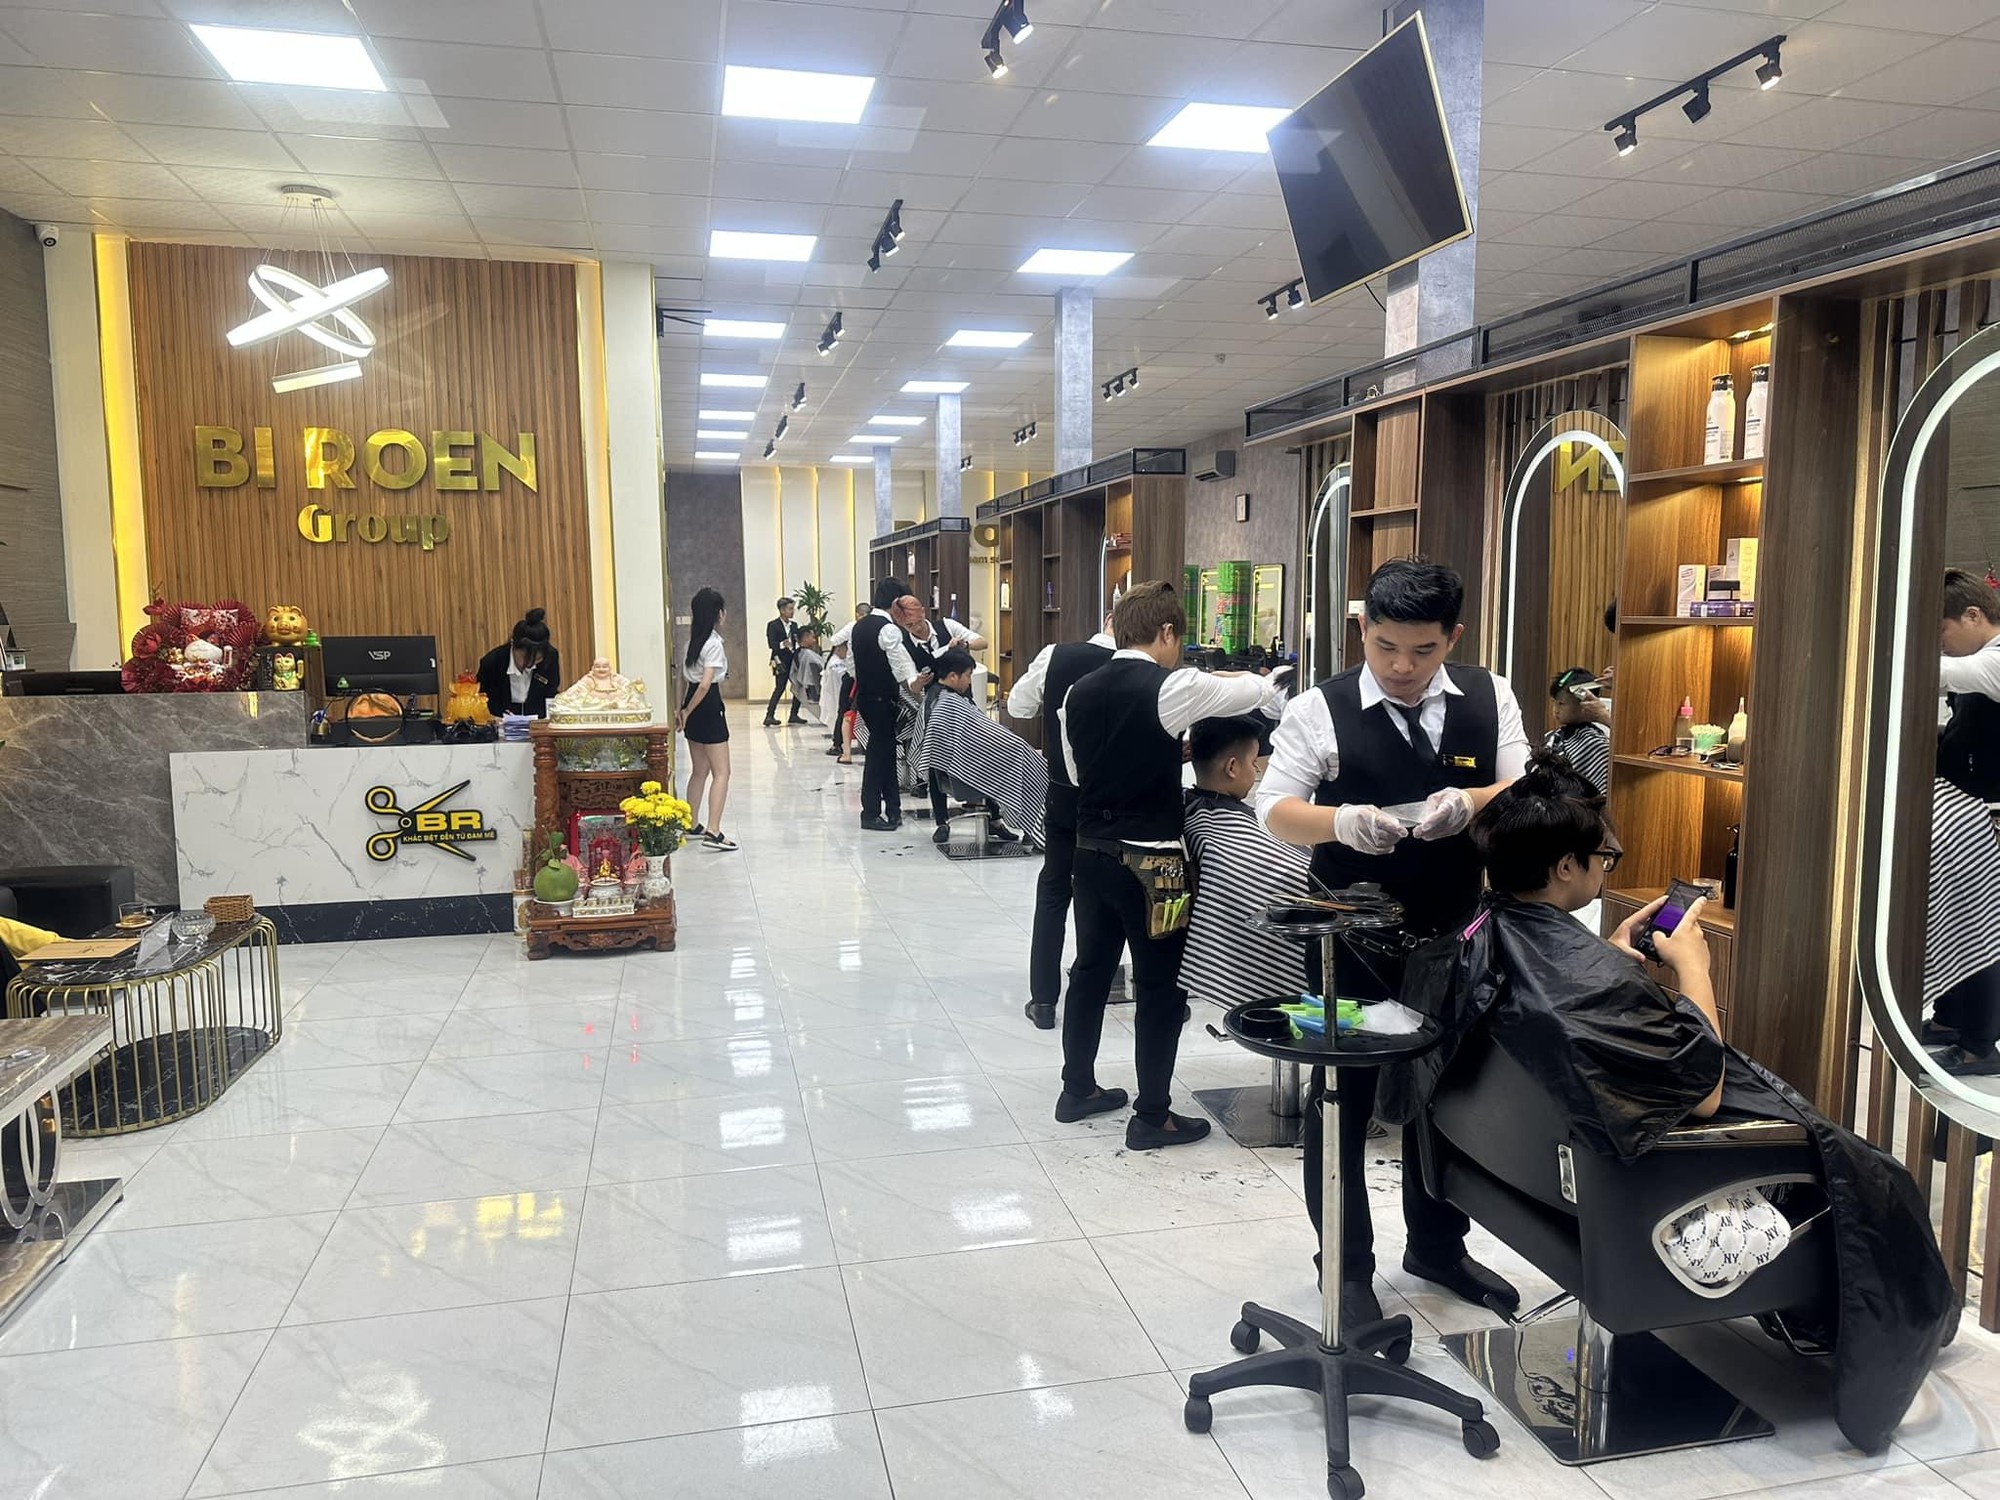 Bi Roen Group: Chuỗi salon tóc nam dẫn đầu xu hướng tại Vũng Tàu - Ảnh 1.